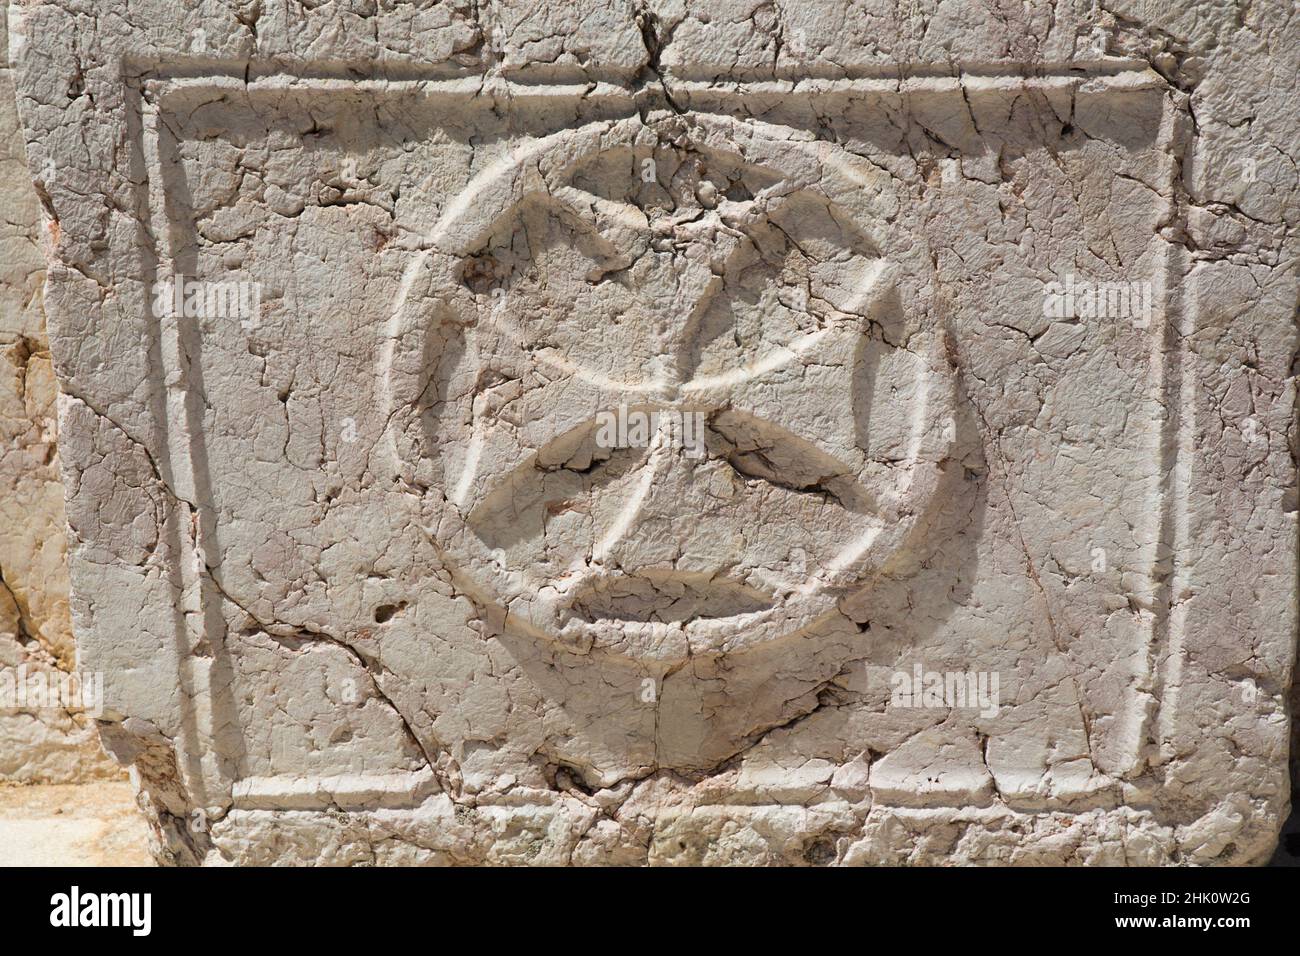 Symbole de croix des chevaliers de Saint John, place des martyrs hébreux, vieille ville de Rhodes, Rhodes, Groupe des îles Dodécanèse, Grèce Banque D'Images